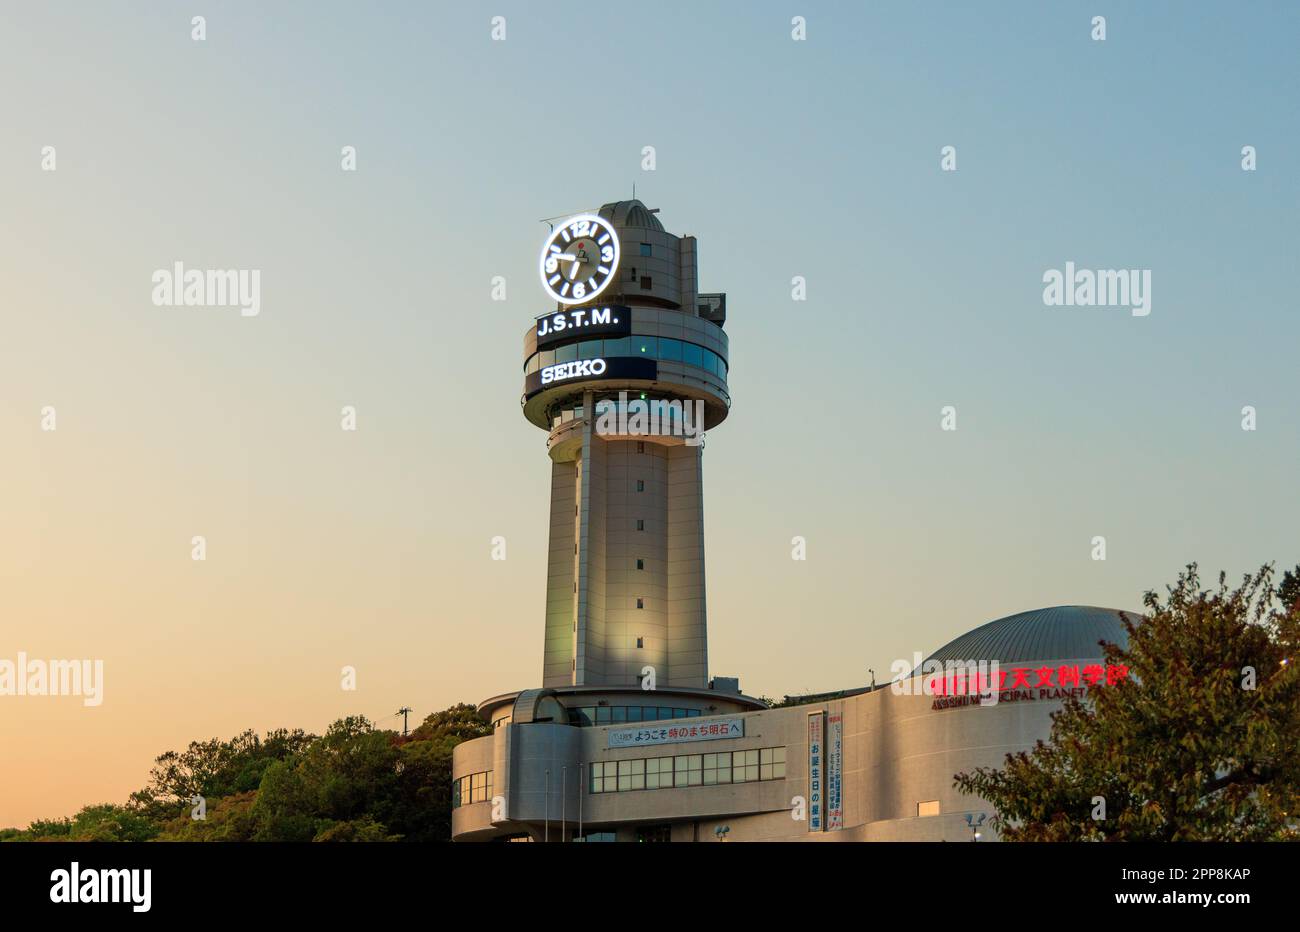 Akashi, Japon - 19 avril 2023: Tour d'horloge au-dessus du planétarium avec couleur coucher de soleil dans le ciel Banque D'Images